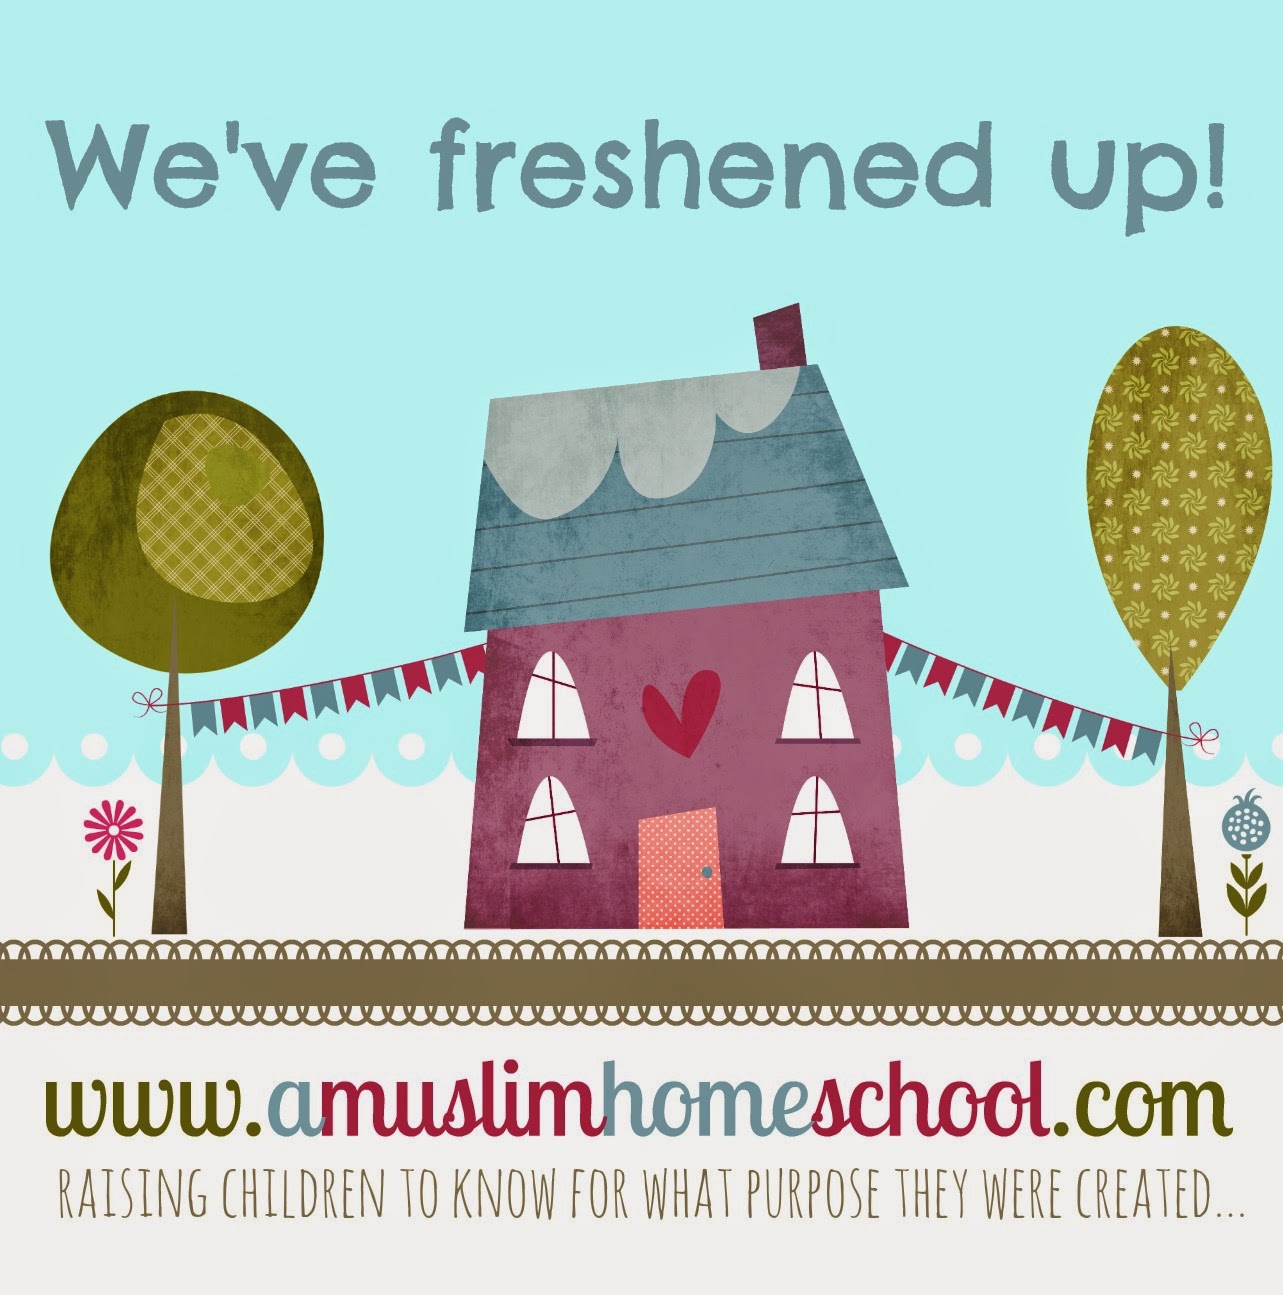 muslim homeschool